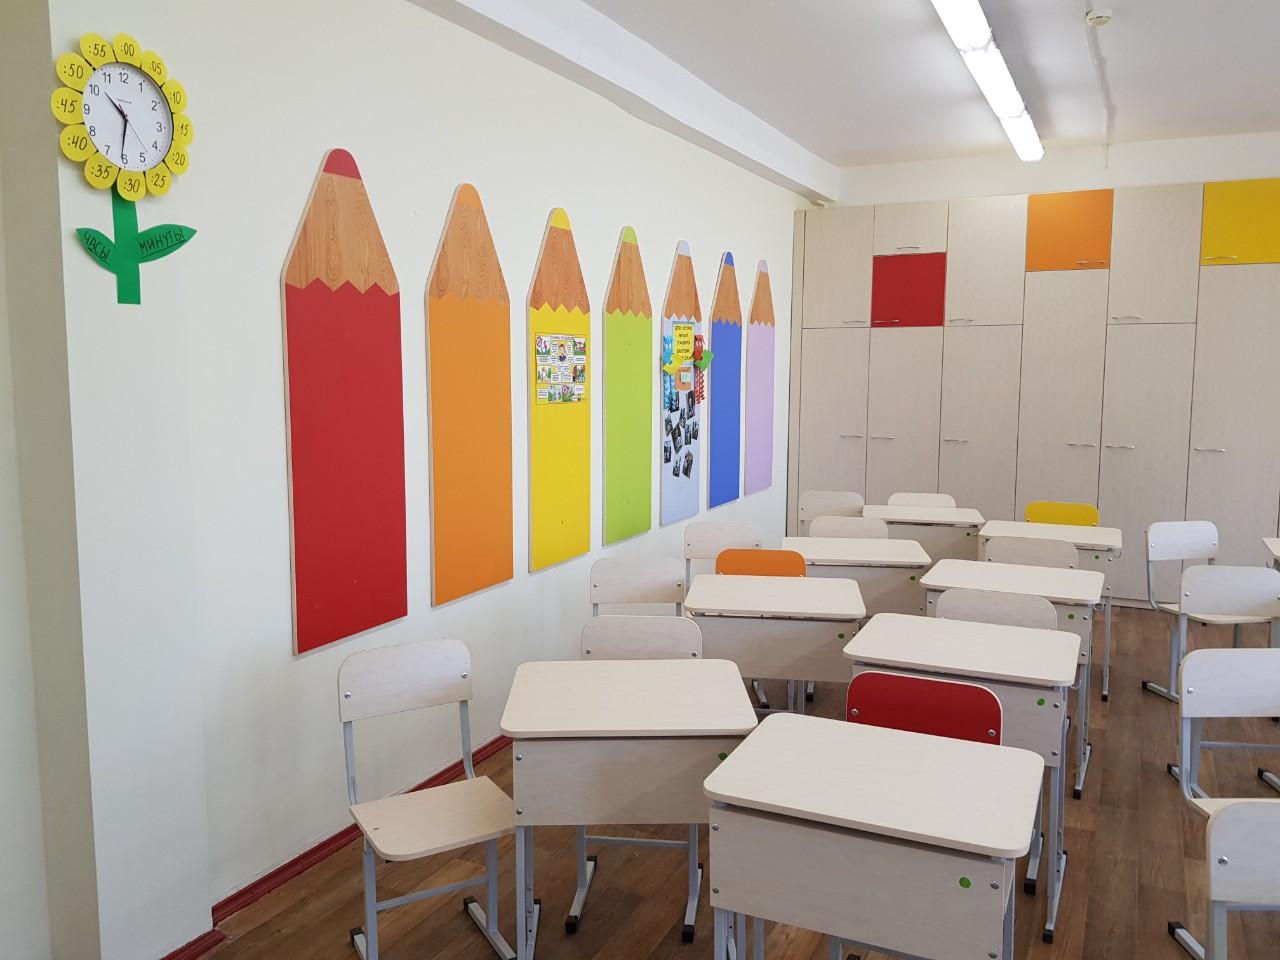 Cumu decorate i mura di e classi di a scola?